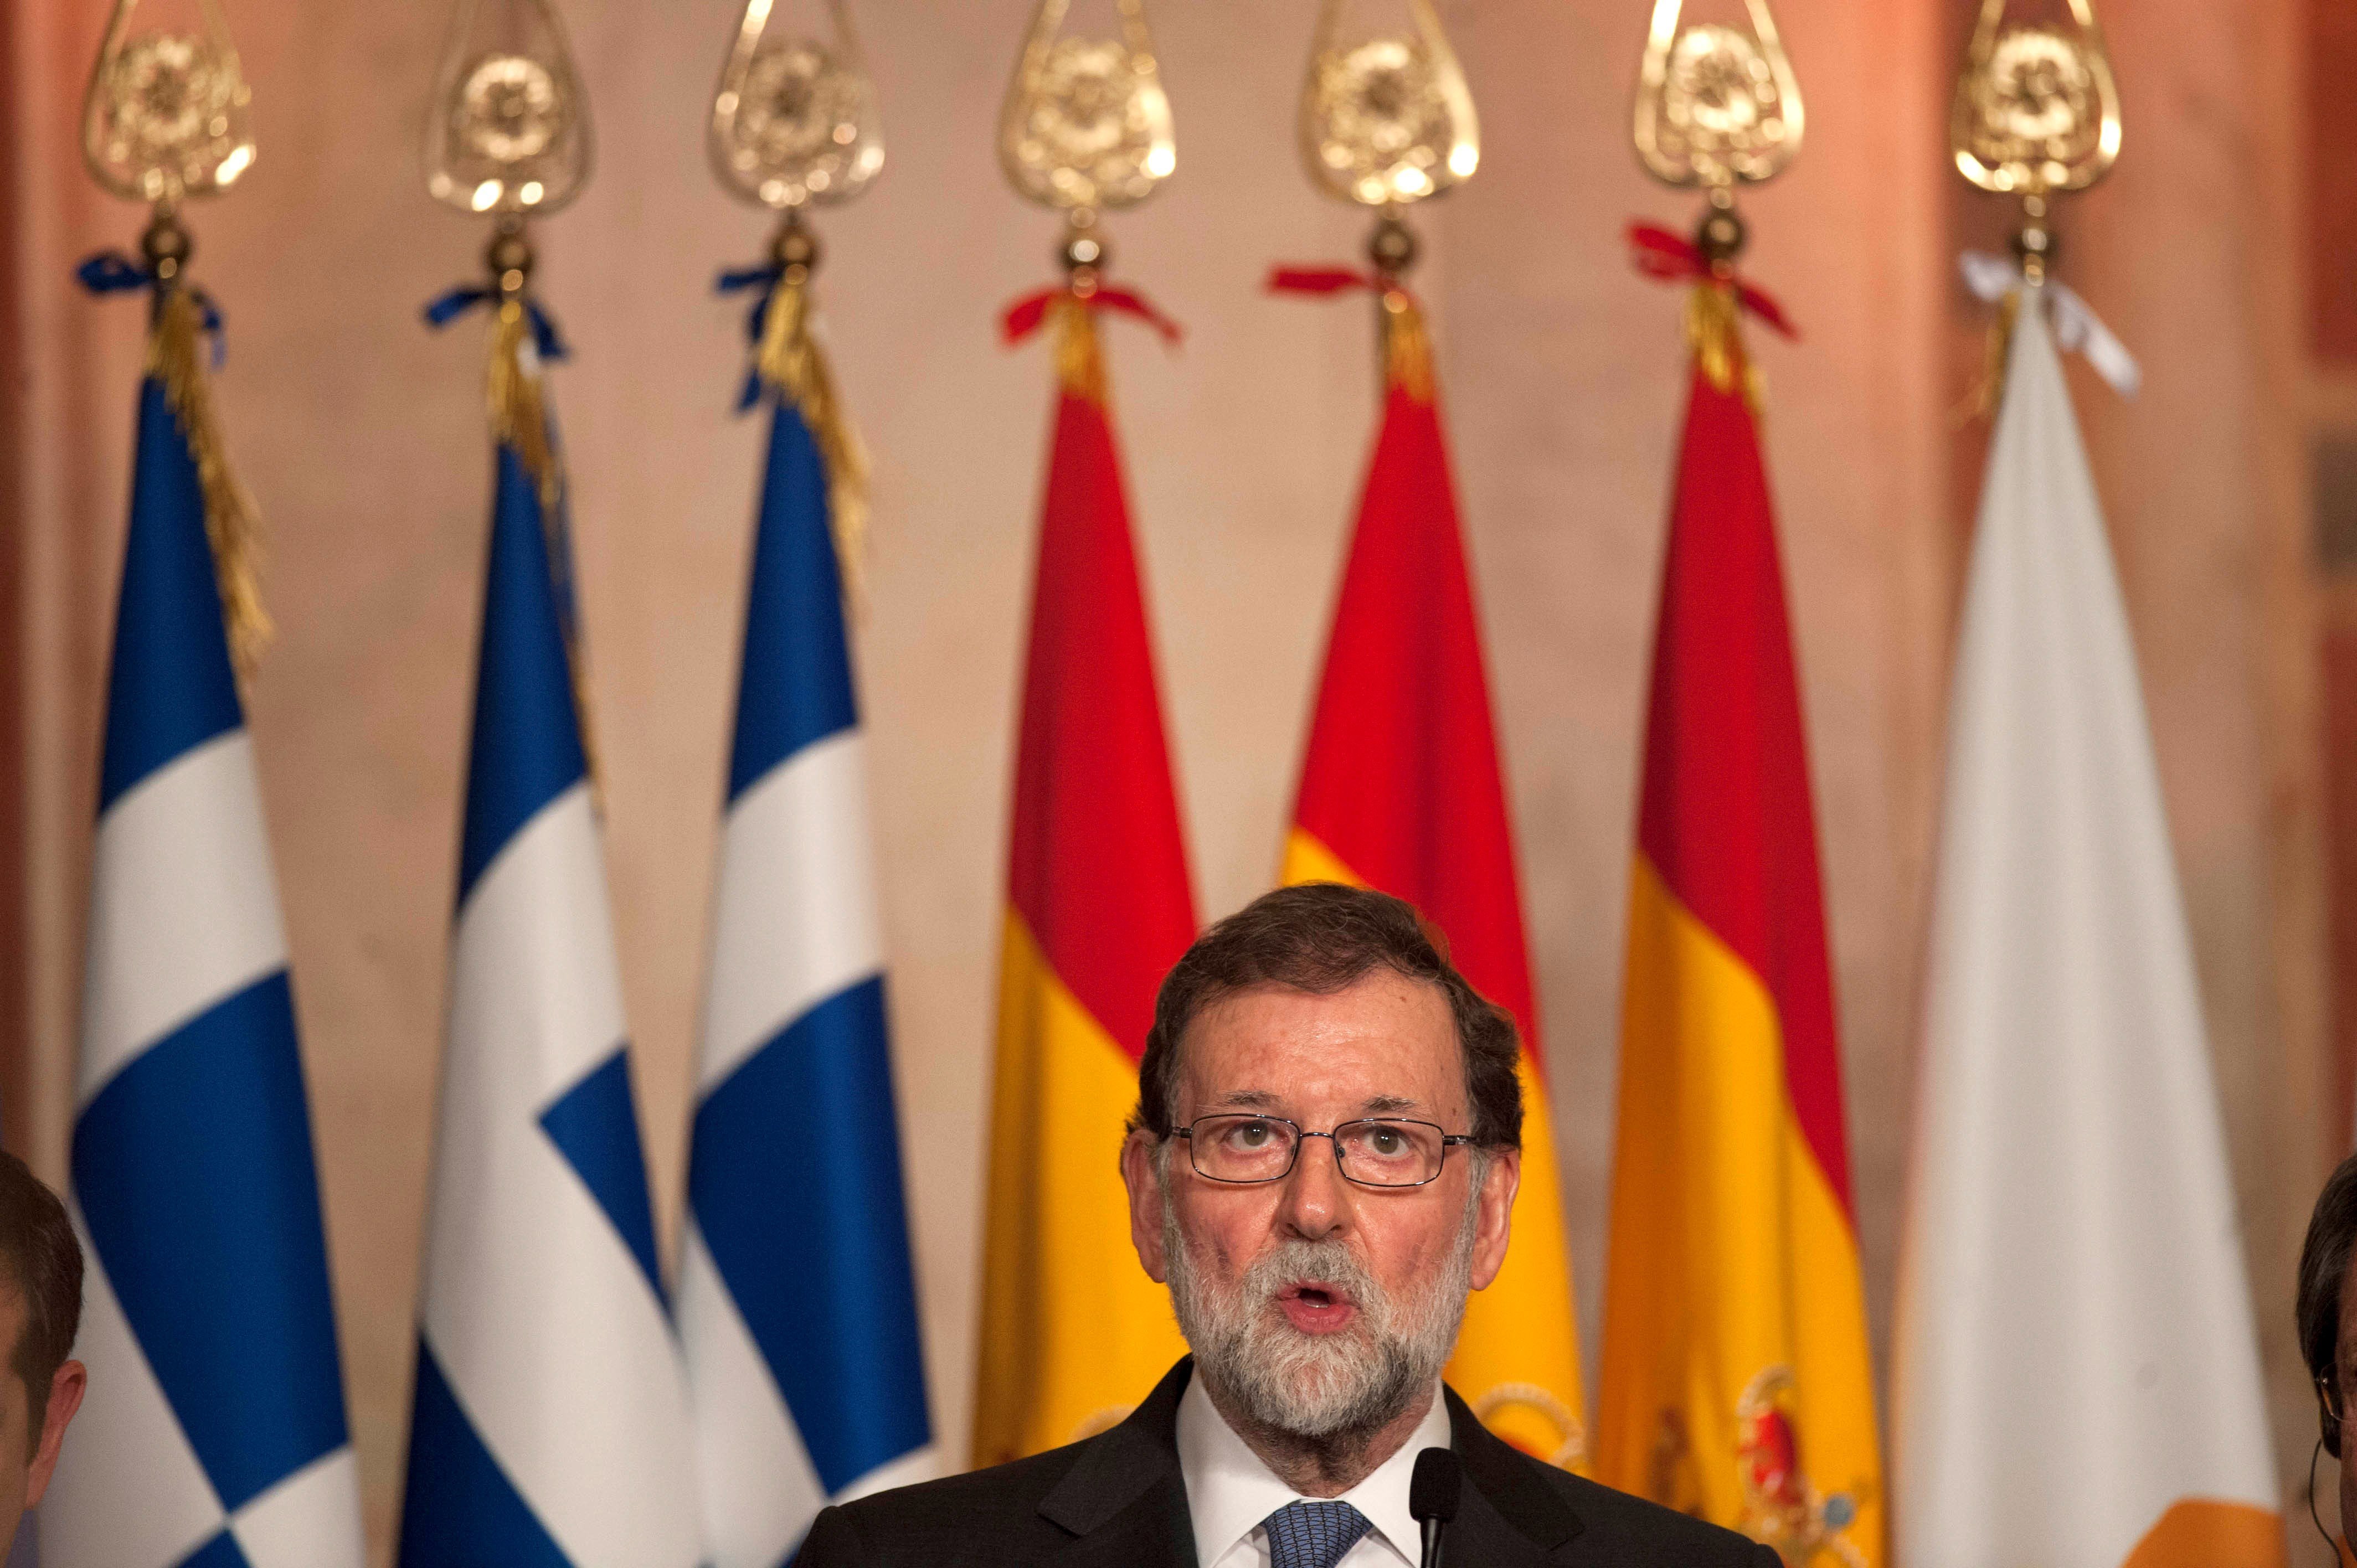 Rajoy perd suport entre les elits espanyoles, diagnostica Bloomberg